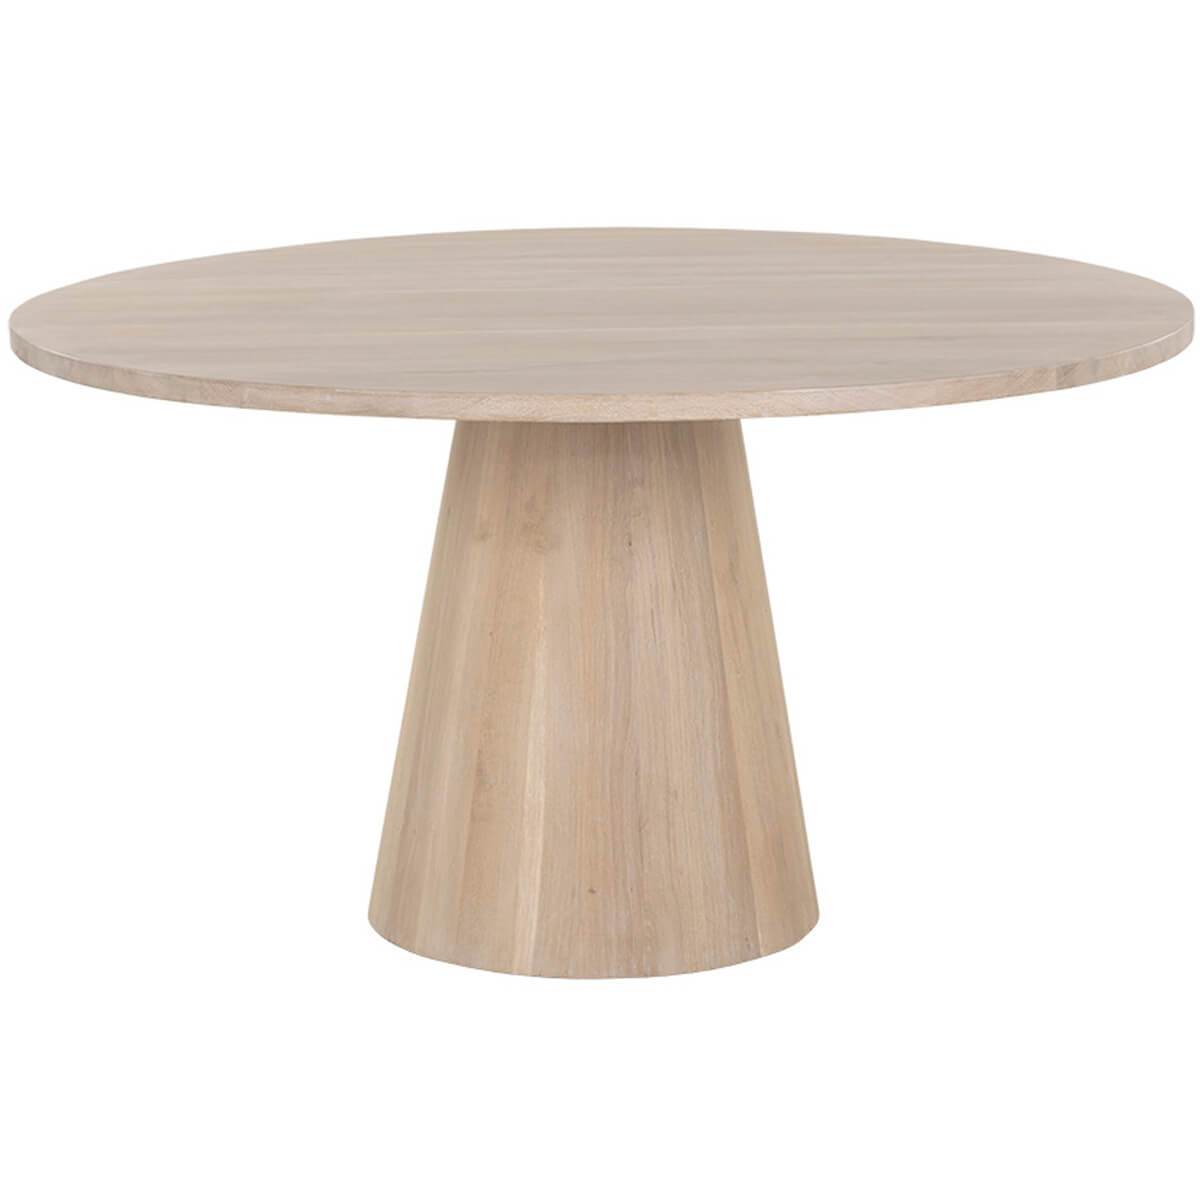 Image of Elina Round Dining Table, Light Oak